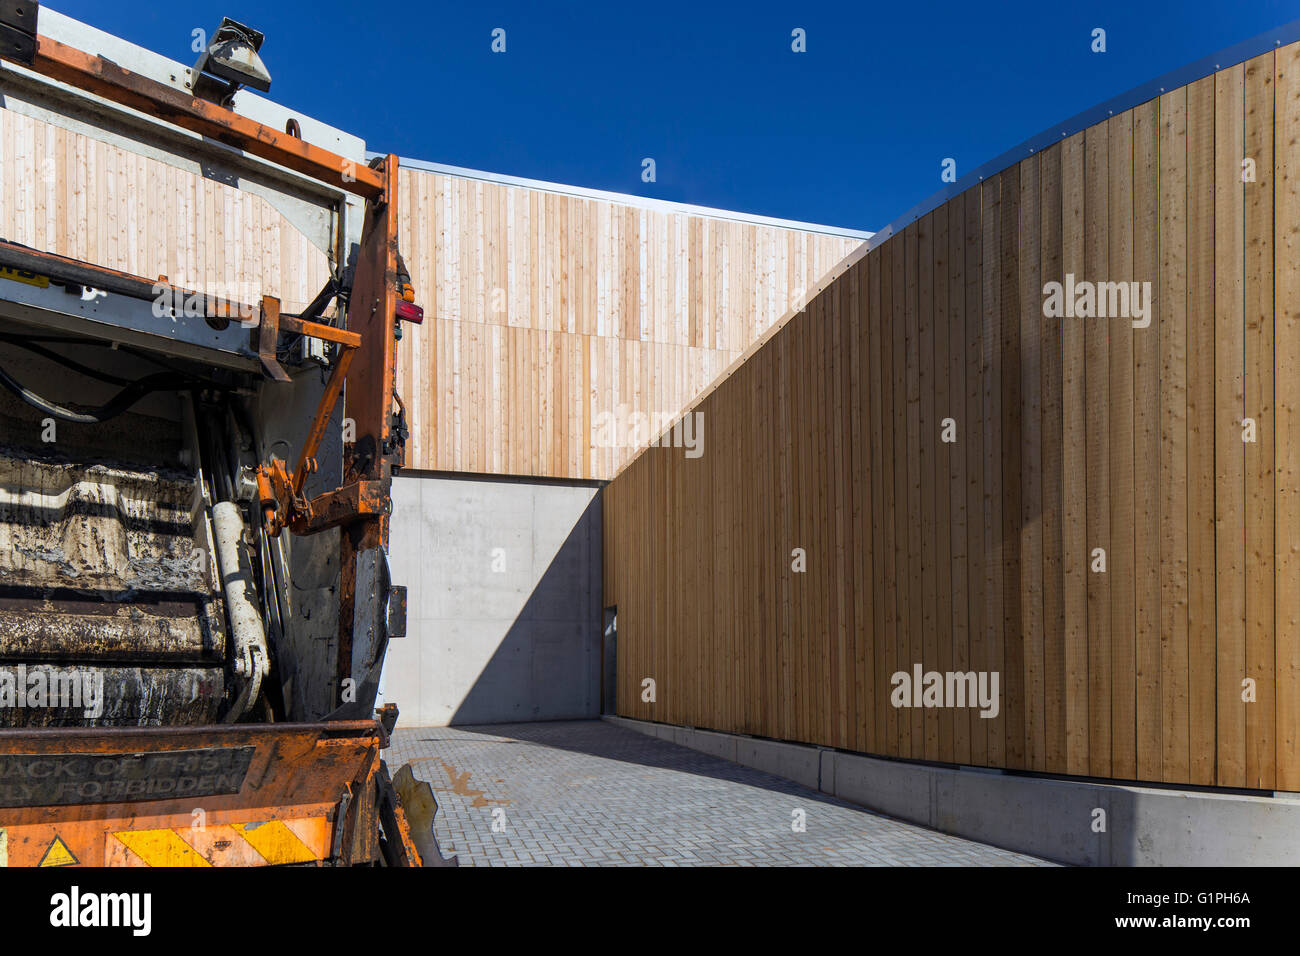 Revestimiento de madera curvada de reciclado de salas y la llegada del camión recolector. Centro de Reciclaje de Bridport, Bridport, Reino Unido. Arquitecto: Mitchell Eley Gould, 2015. Foto de stock